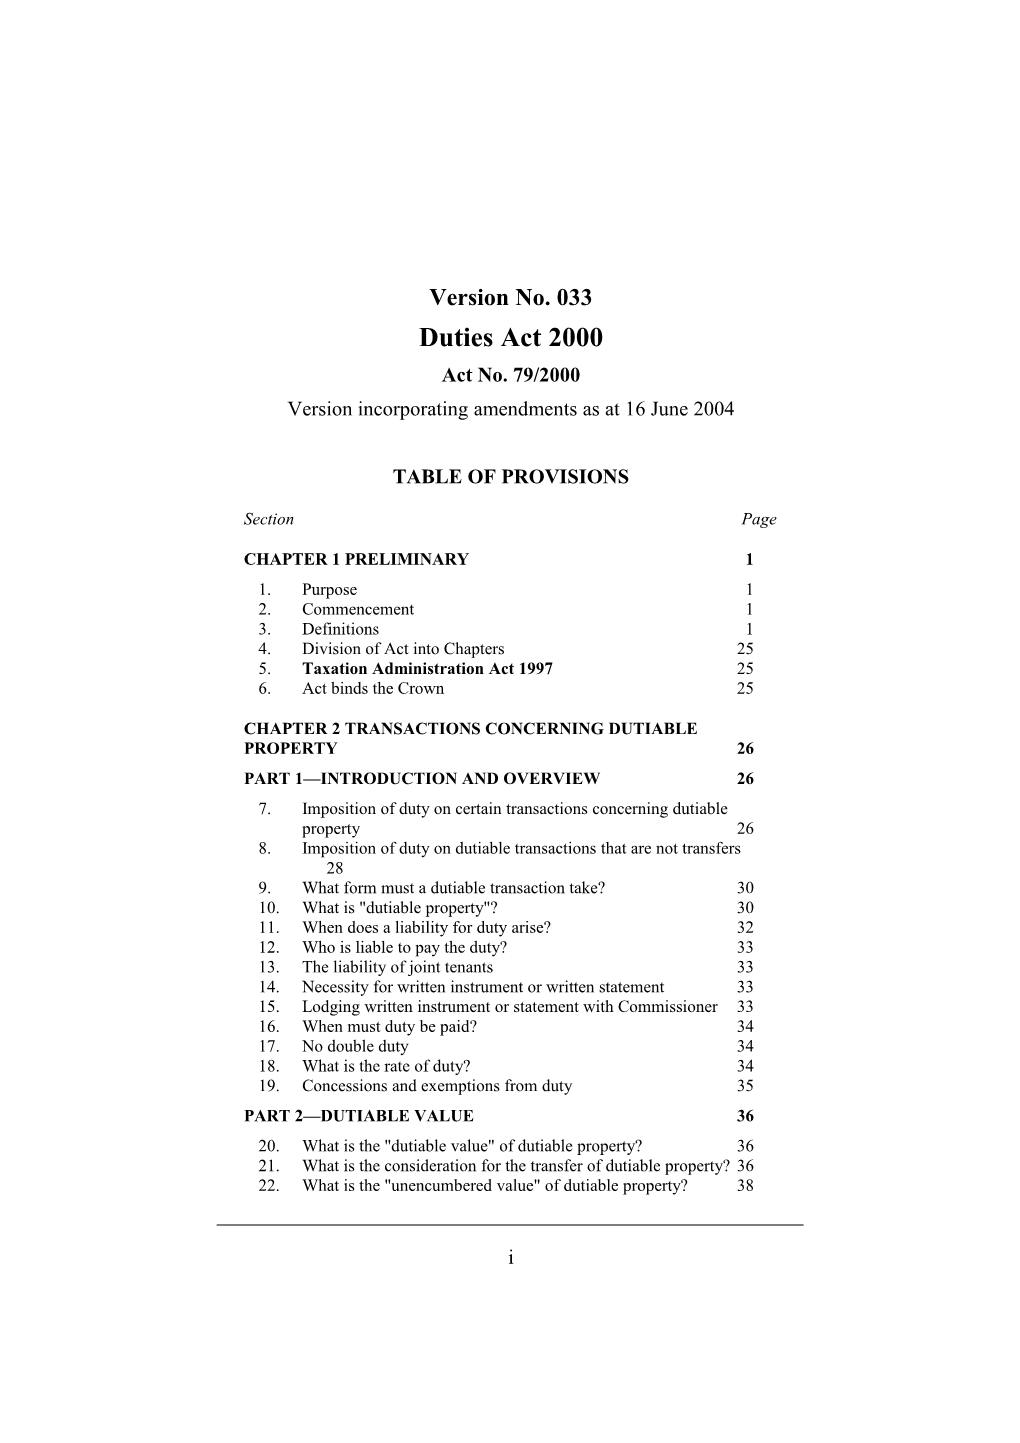 Version Incorporating Amendments As at 16 June 2004